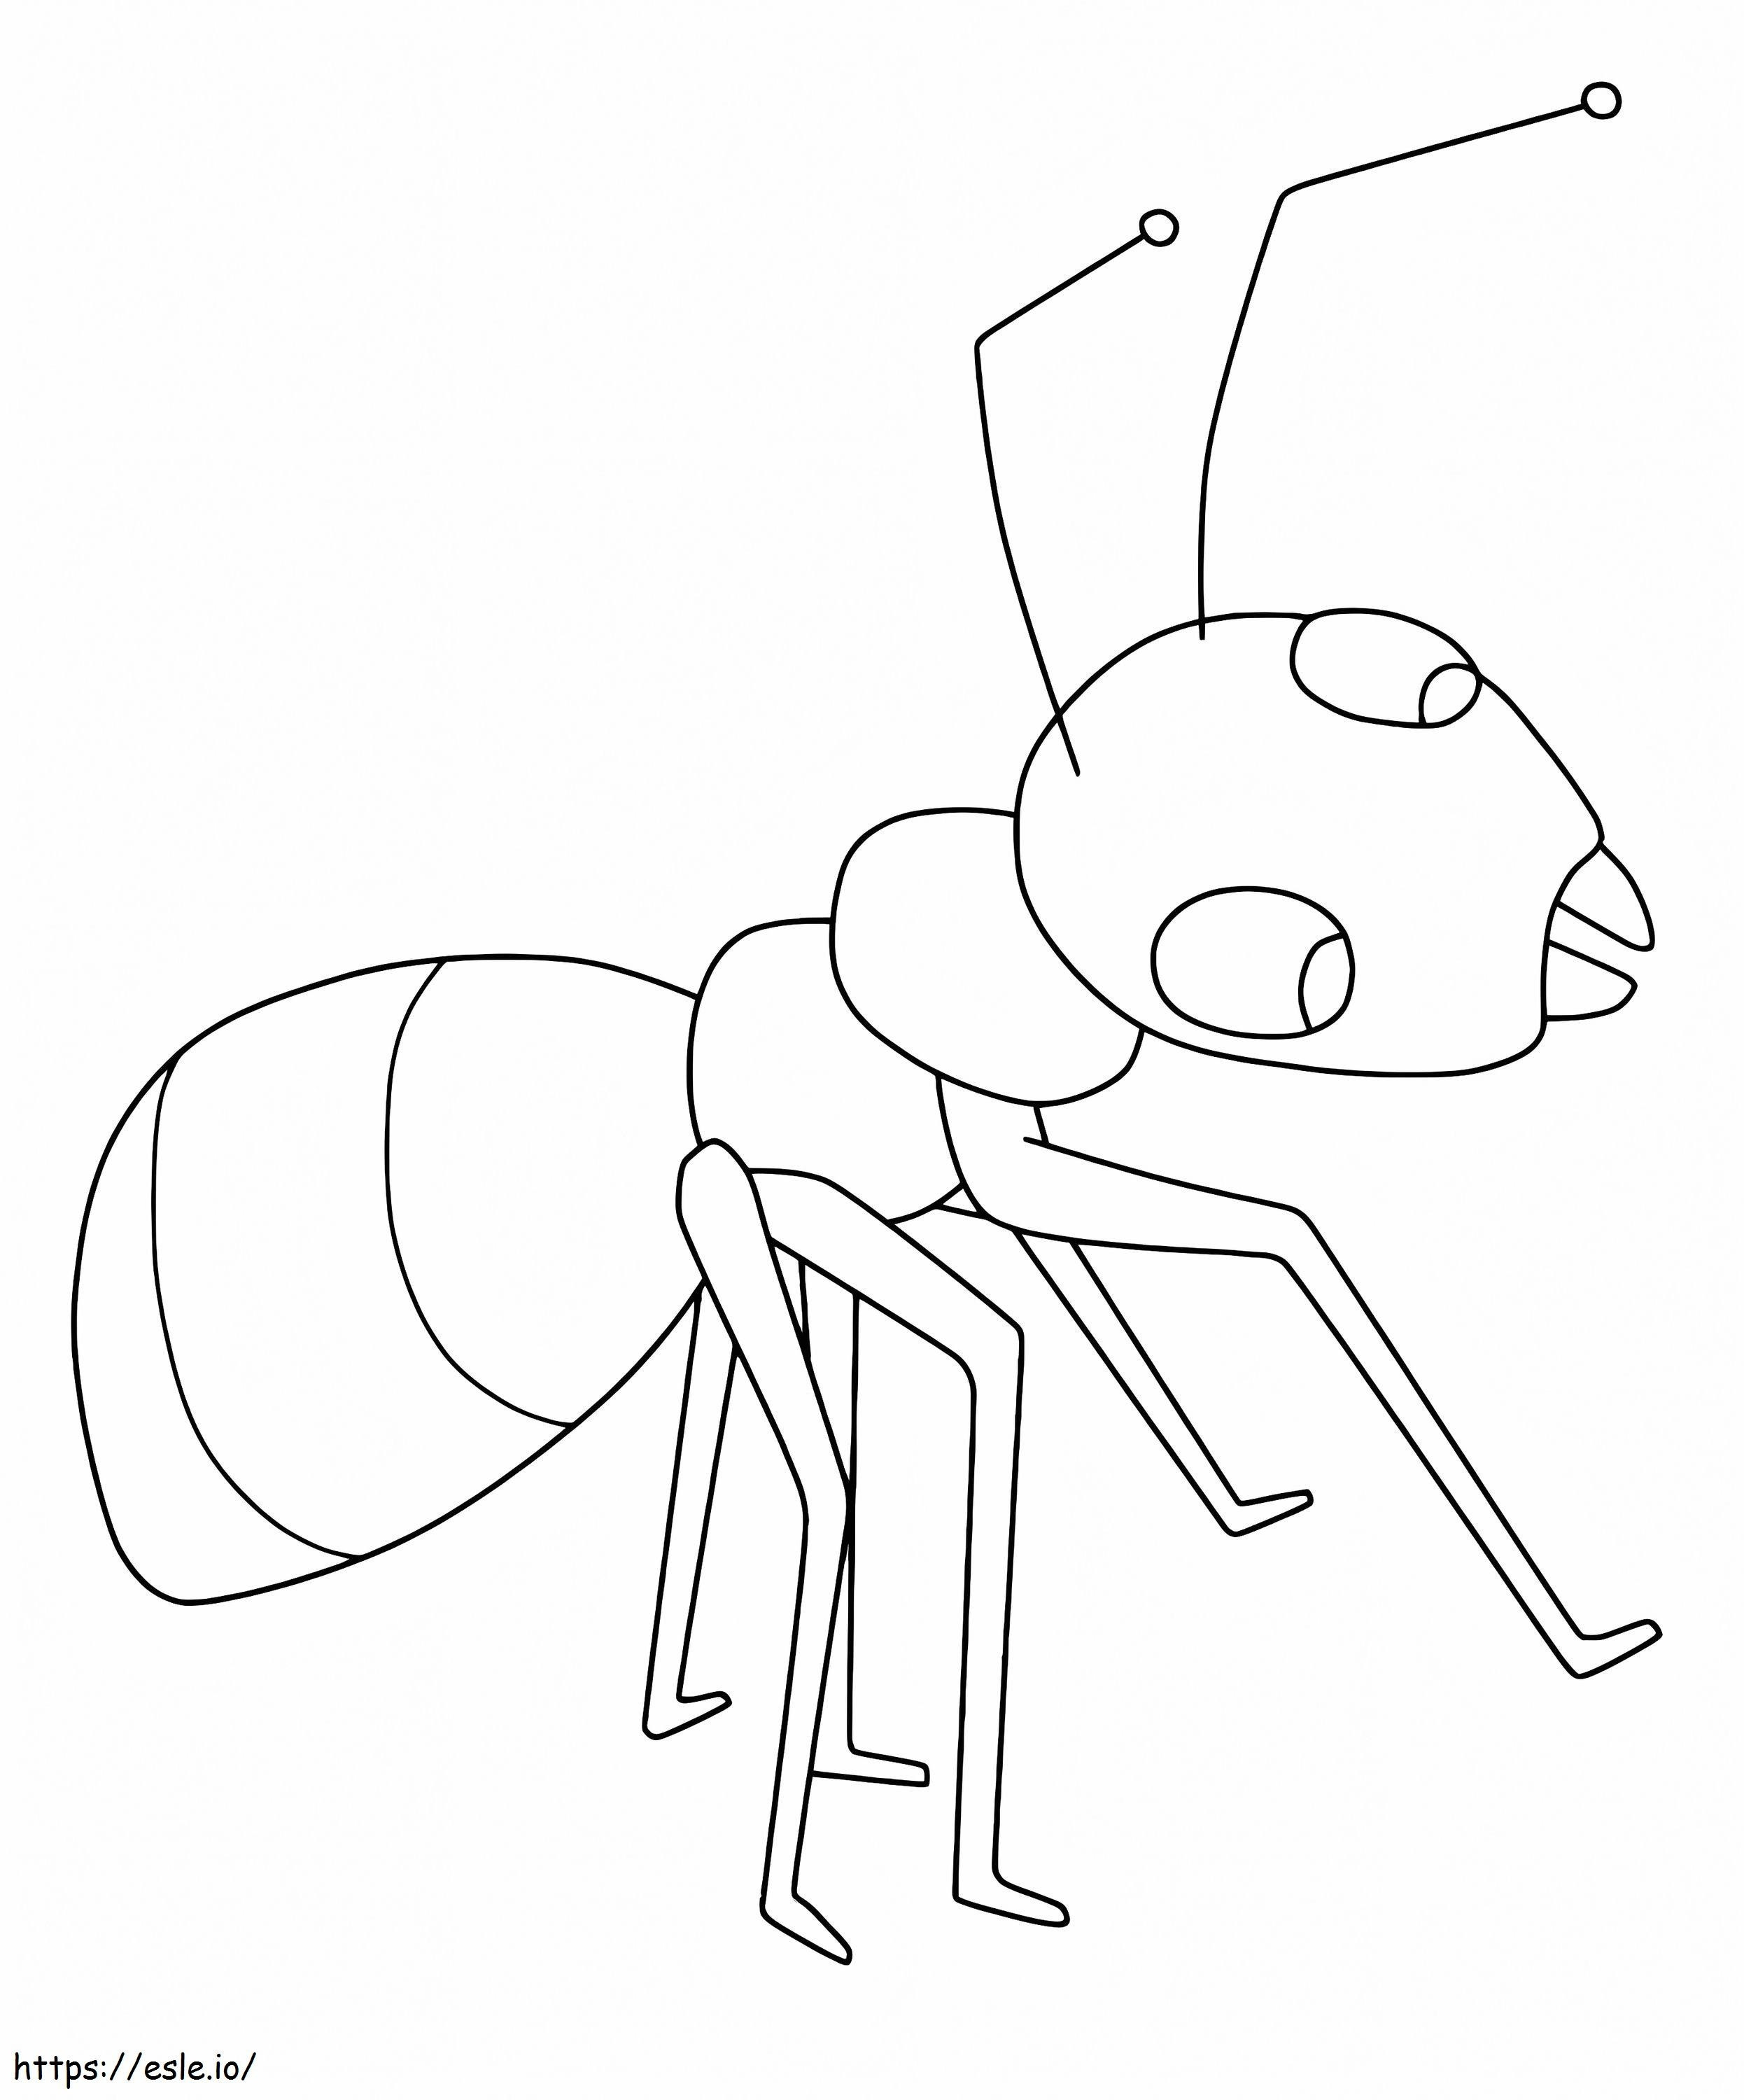 Darmowa mrówka kolorowanka